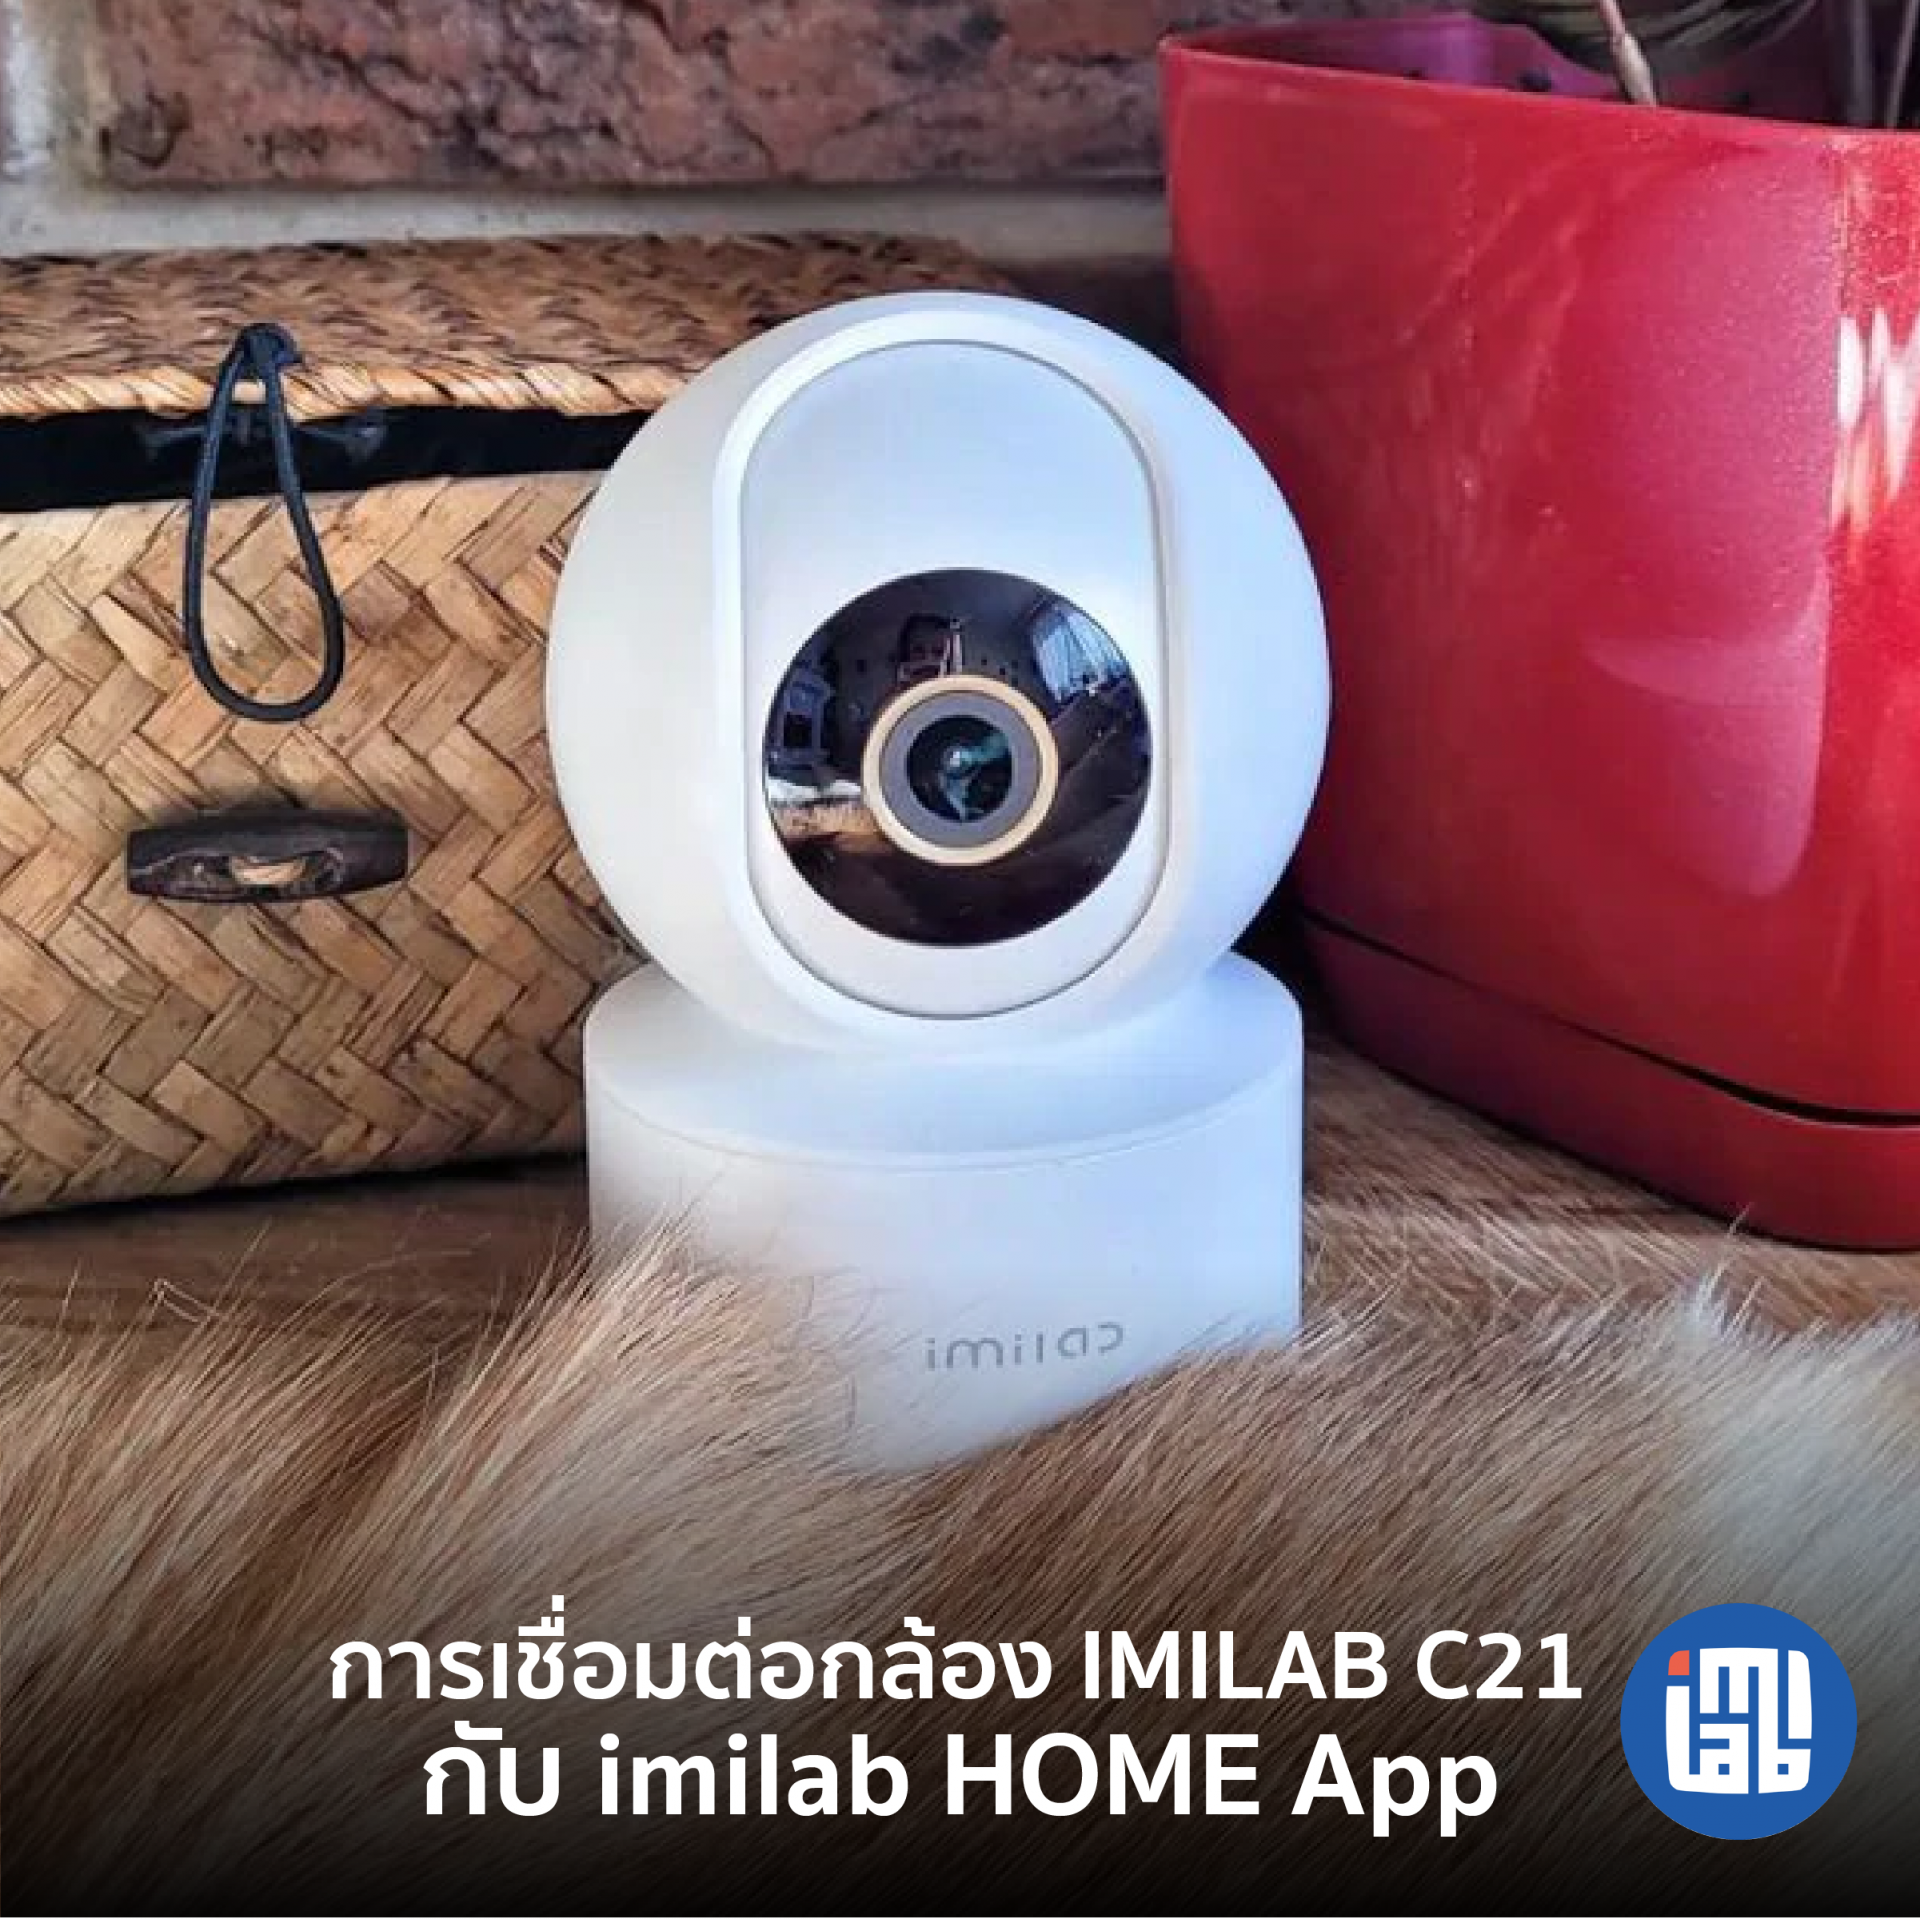 คู่มือการเชื่อมต่อกล้อง IMILAB C21 กับ IMILAB Home App